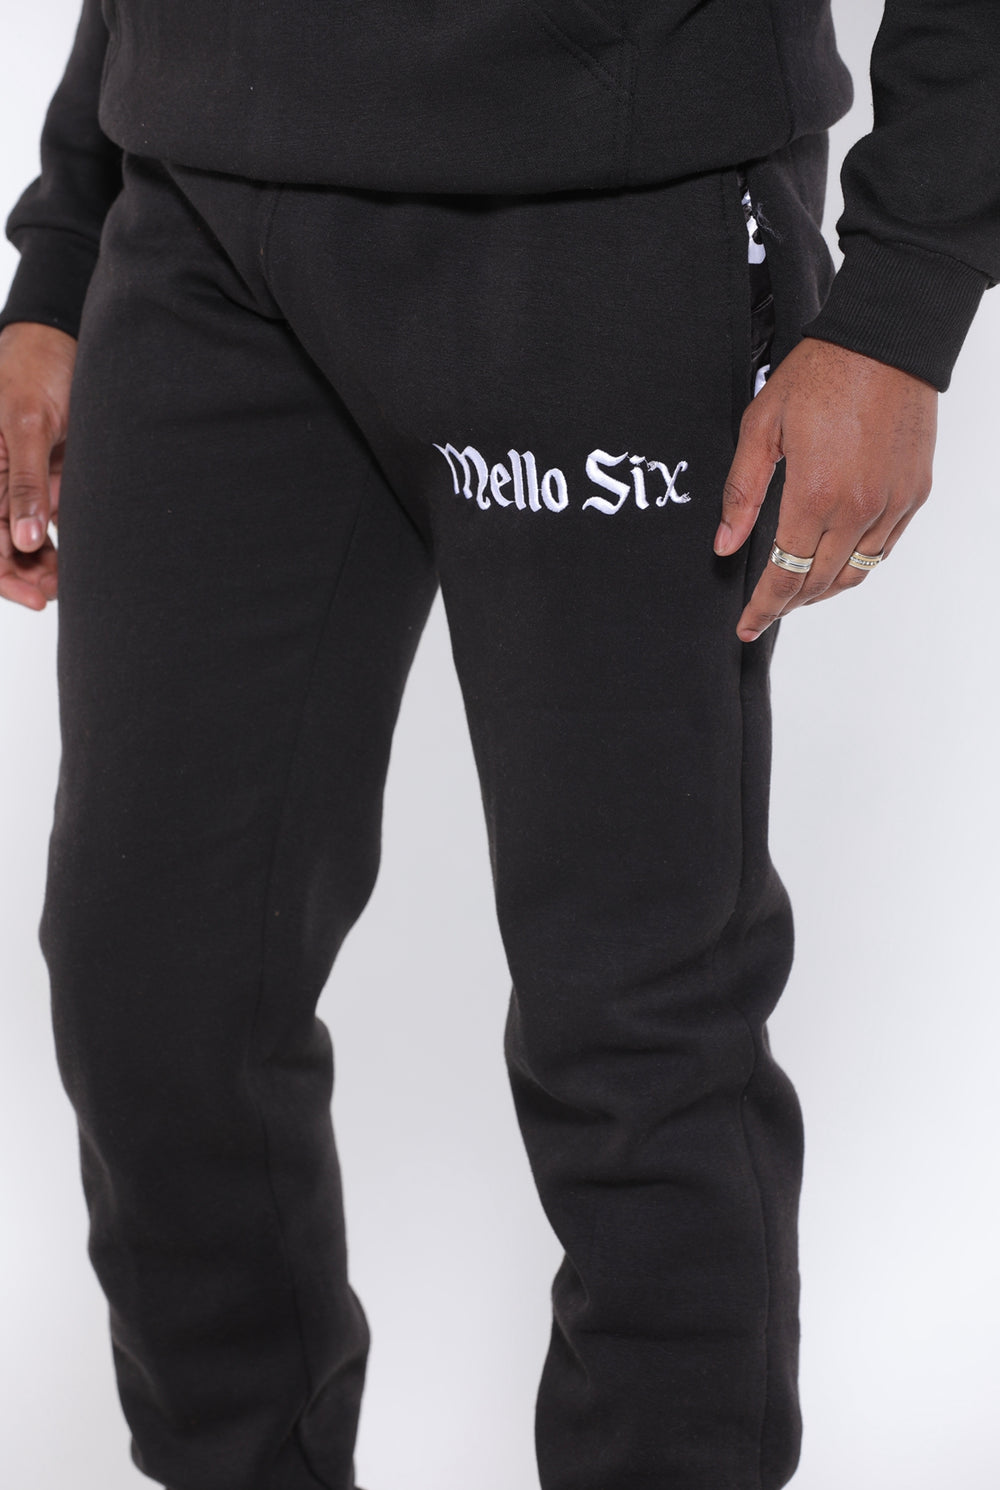 Mello Six Original Sweatpants